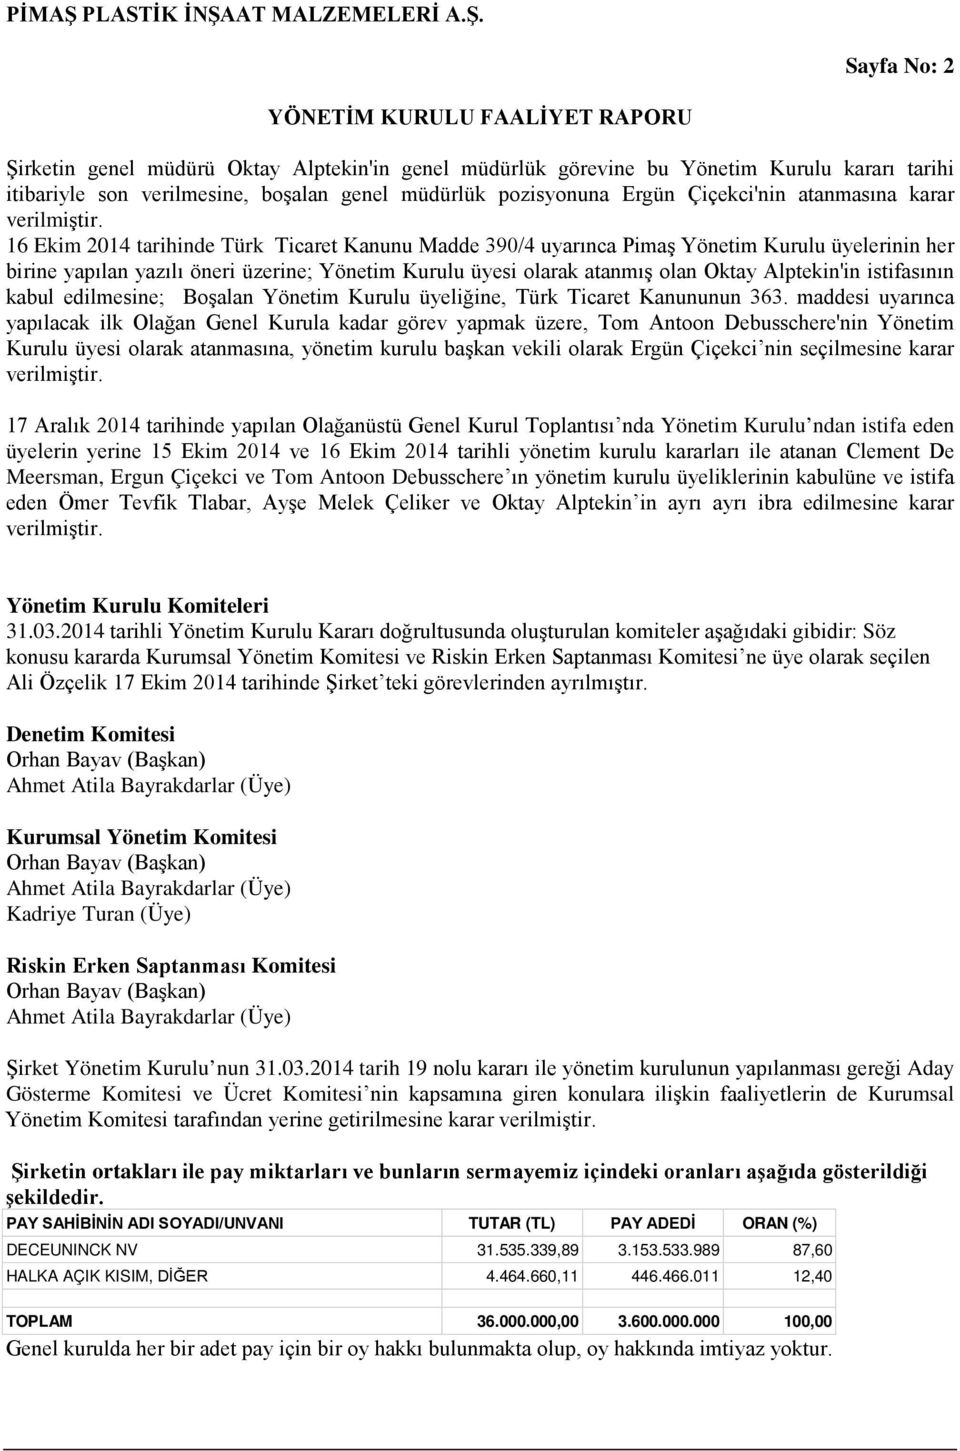 16 Ekim 2014 tarihinde Türk Ticaret Kanunu Madde 390/4 uyarınca Pimaş Yönetim Kurulu üyelerinin her birine yapılan yazılı öneri üzerine; Yönetim Kurulu üyesi olarak atanmış olan Oktay Alptekin'in